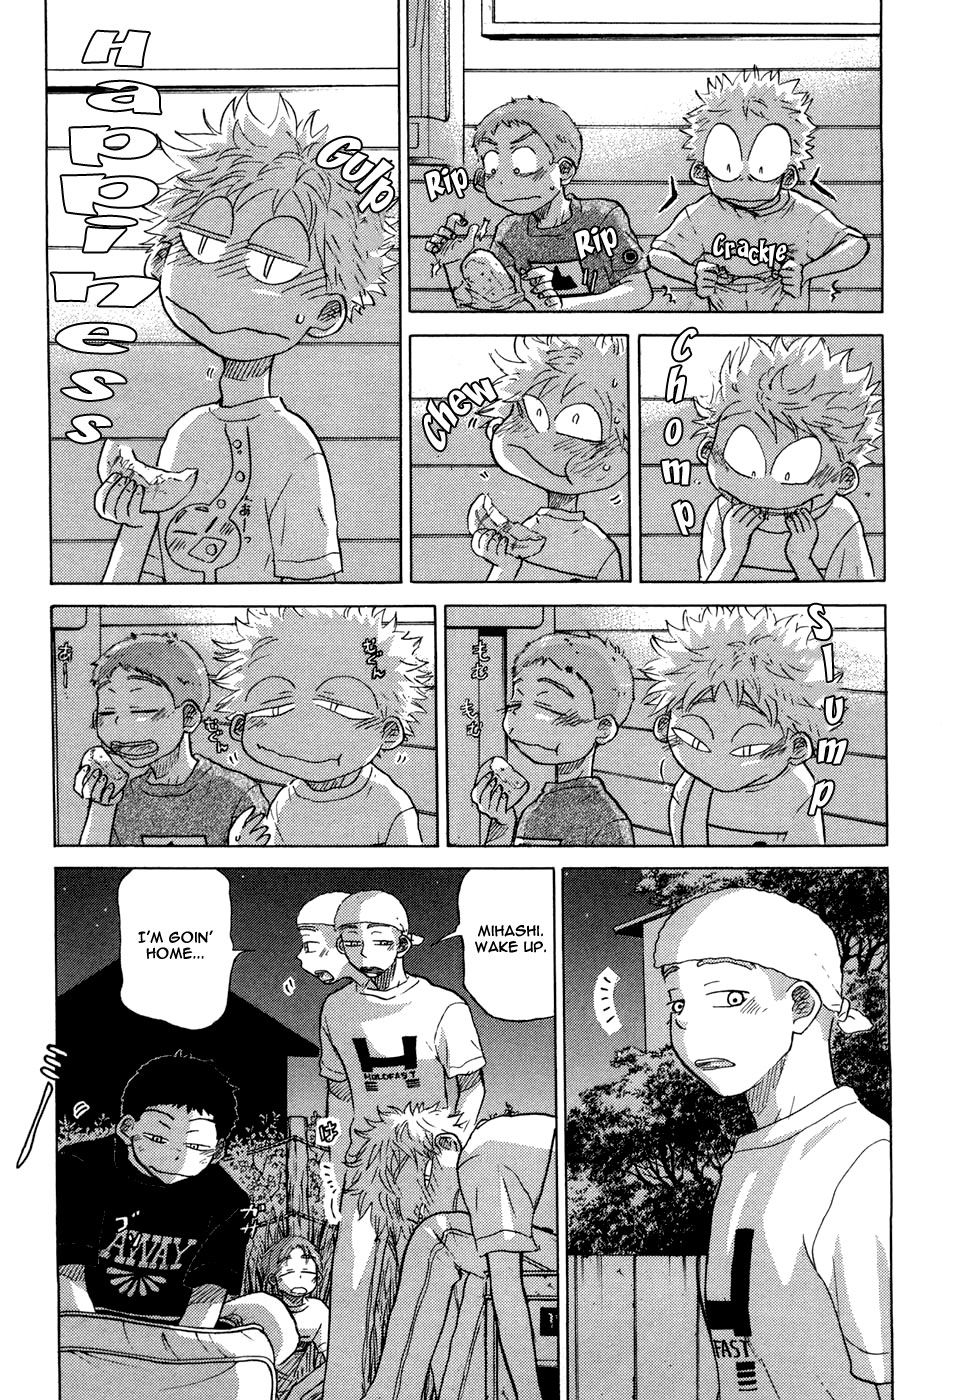 Ookiku Furikabutte - 028b page p_00036